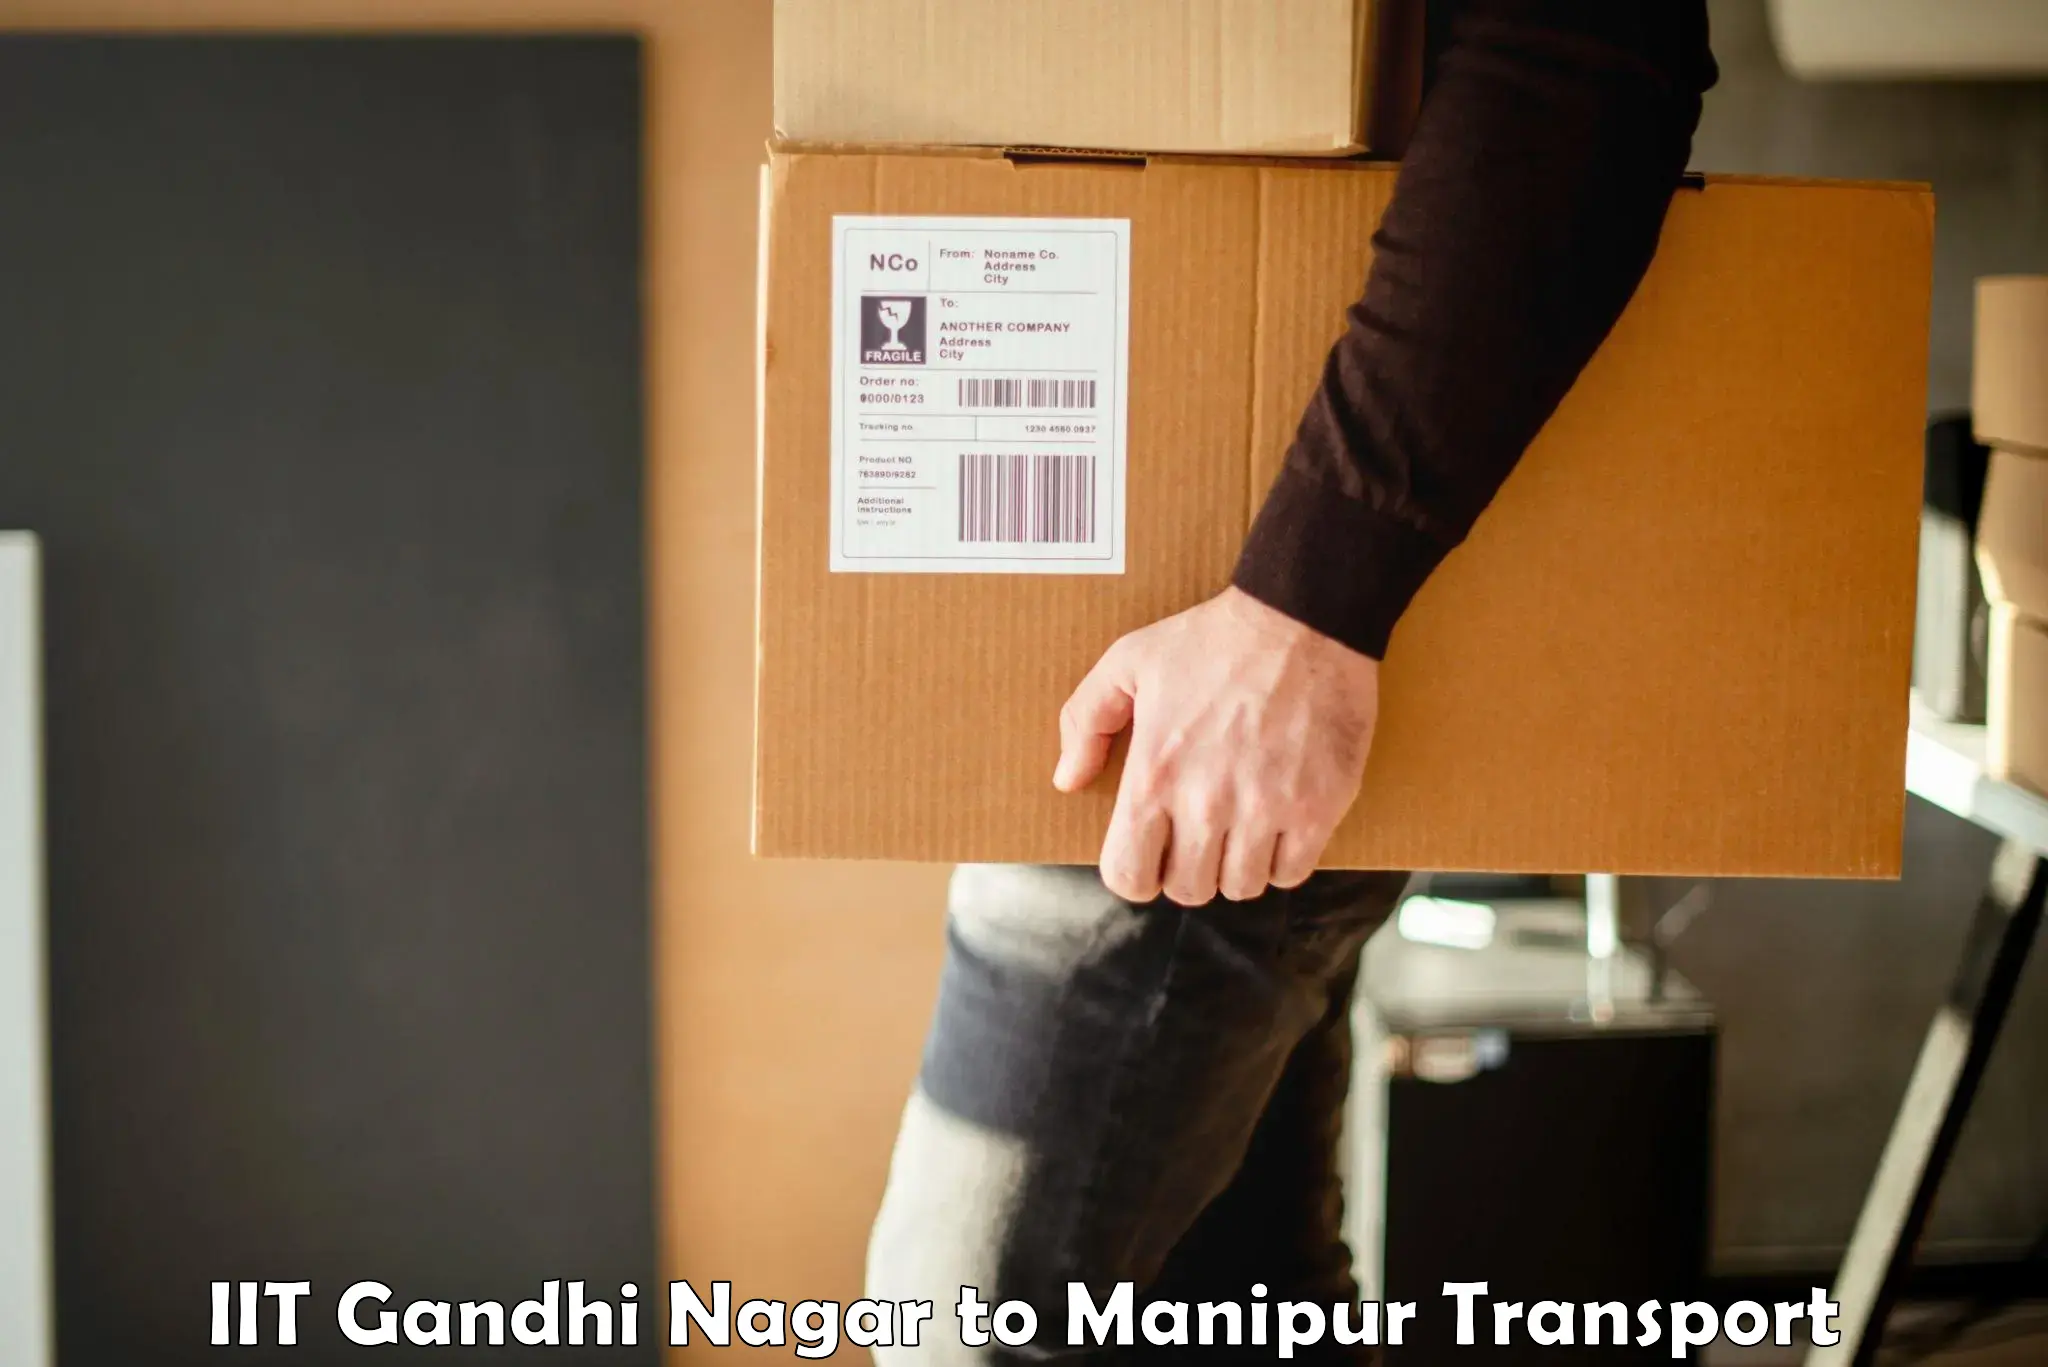 Delivery service IIT Gandhi Nagar to Manipur